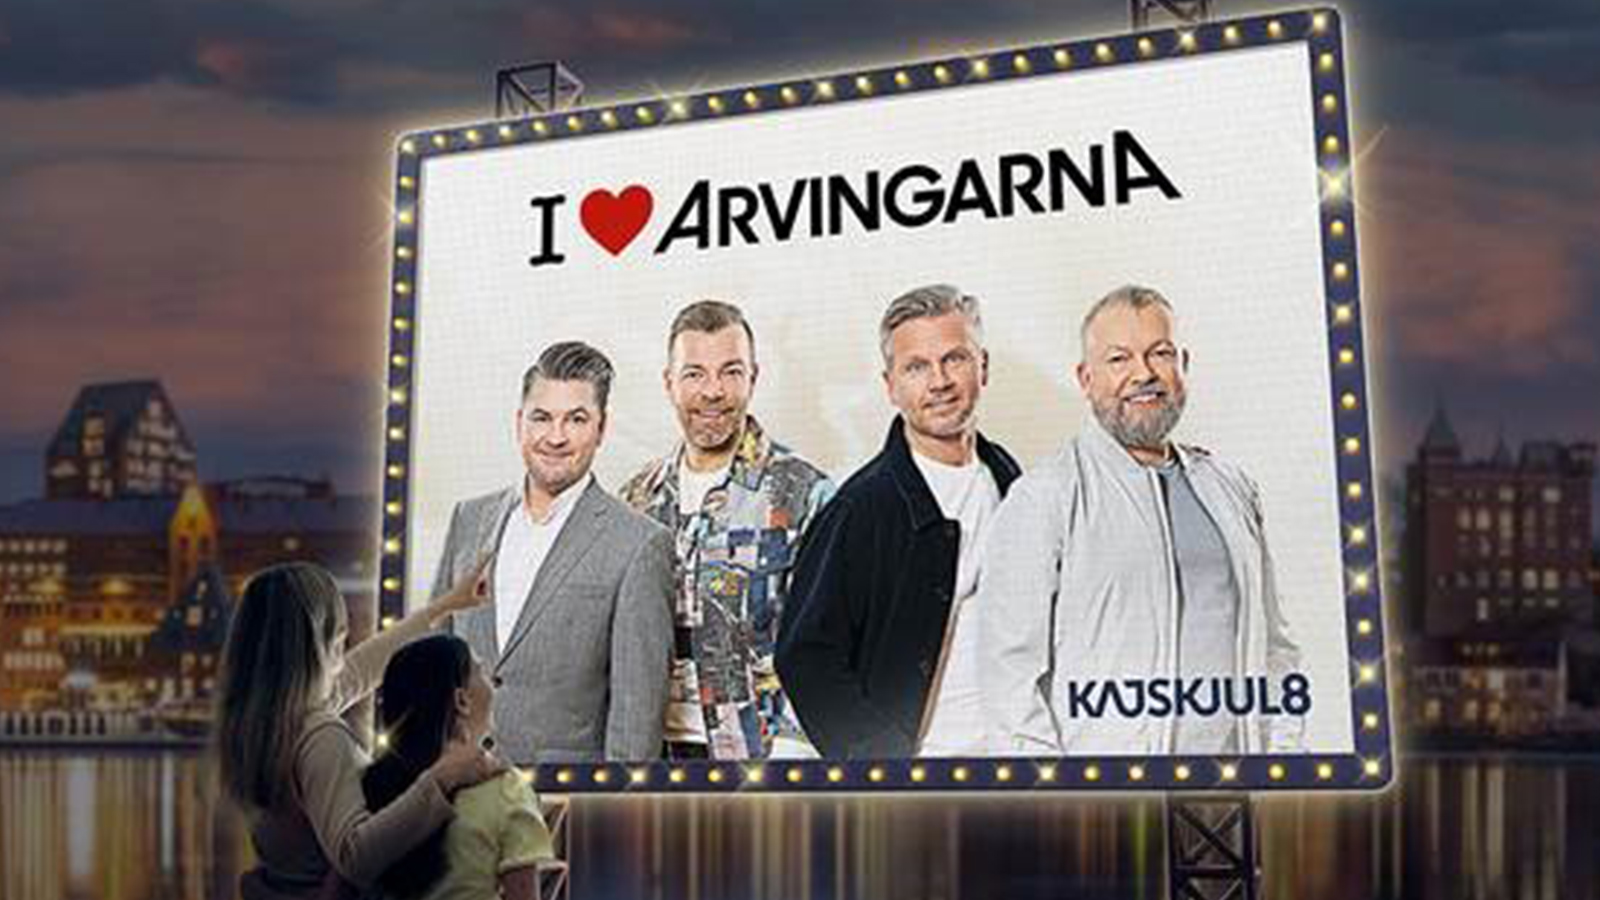 Arvingarnas krogshow på Kajskjul 8 i Göteborg